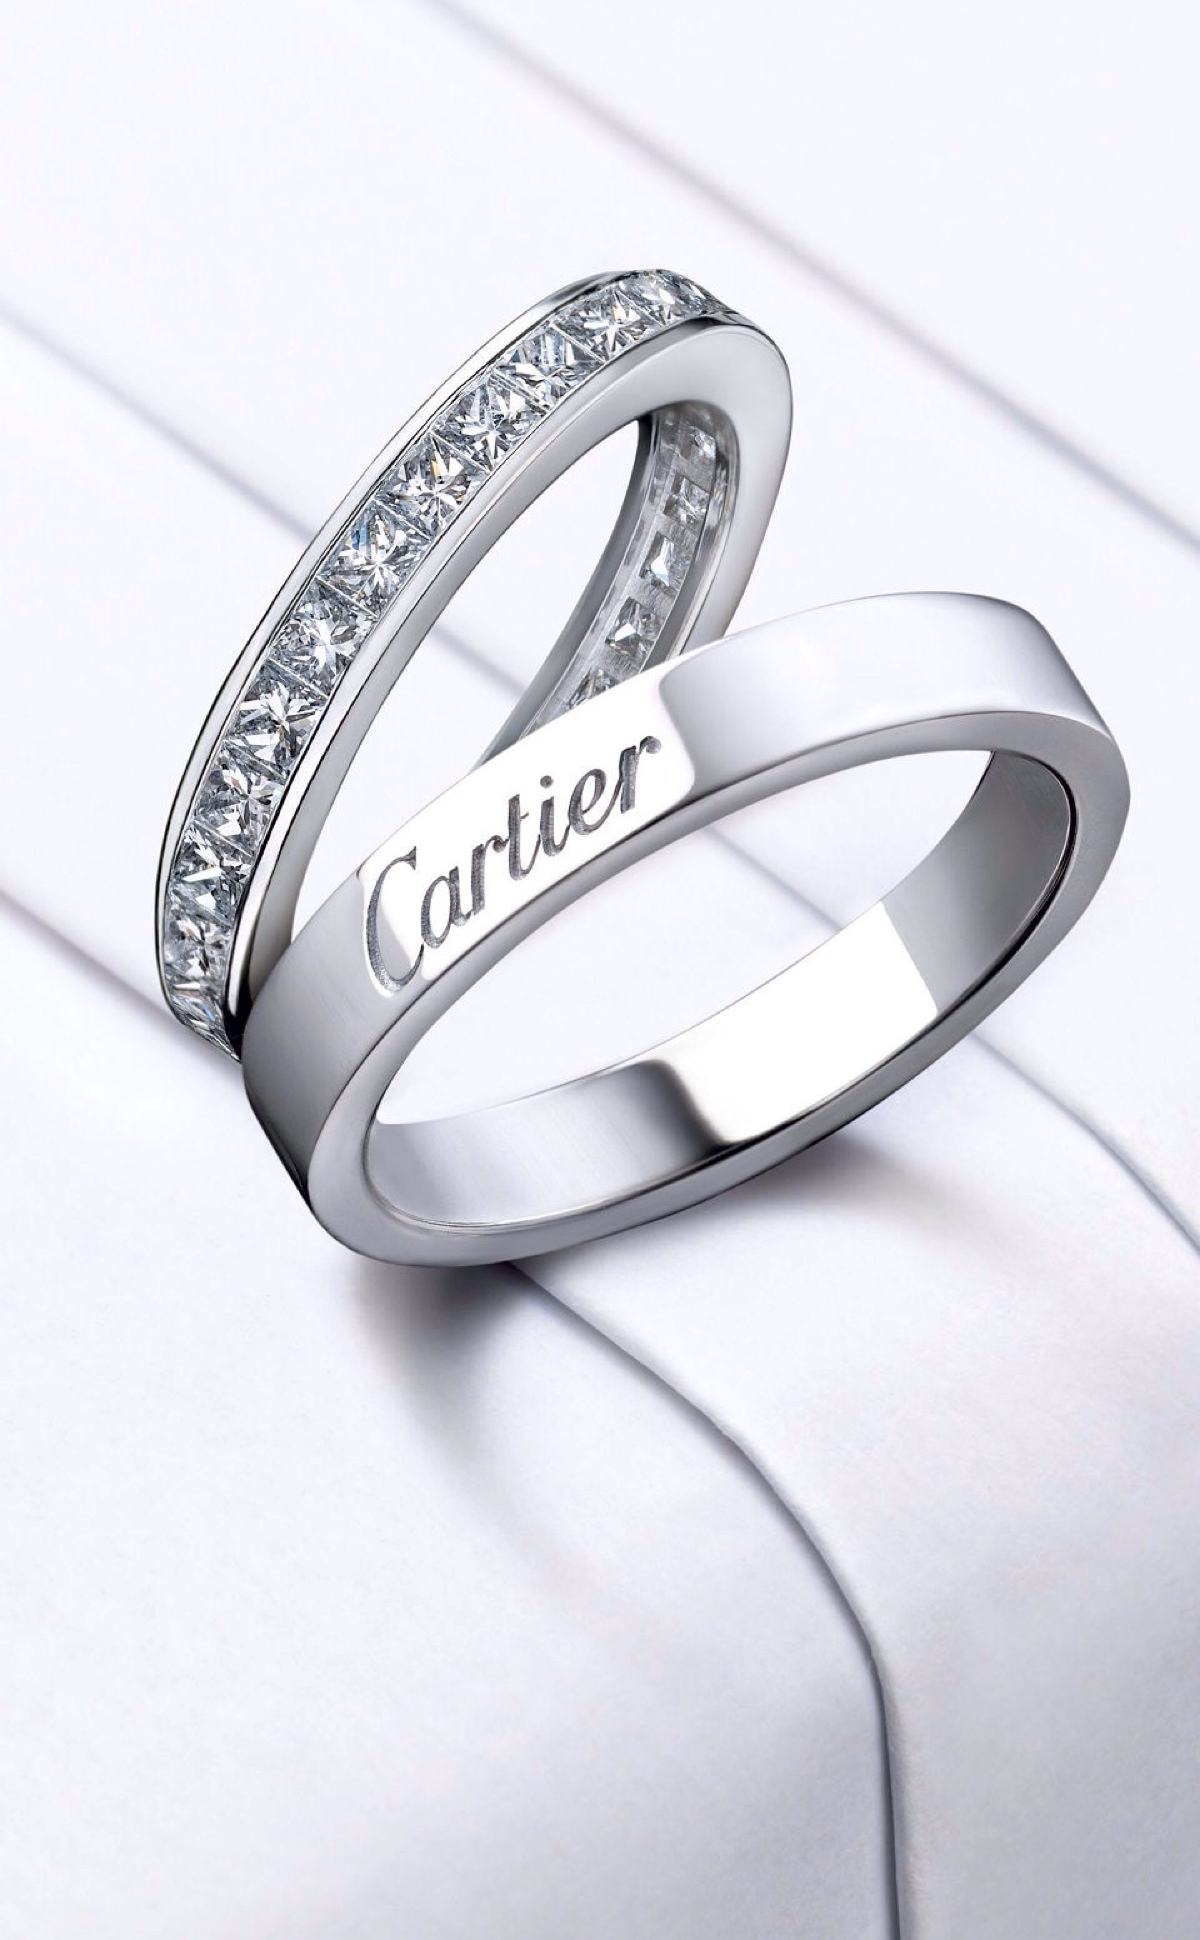 Обручальные кольца от cartier